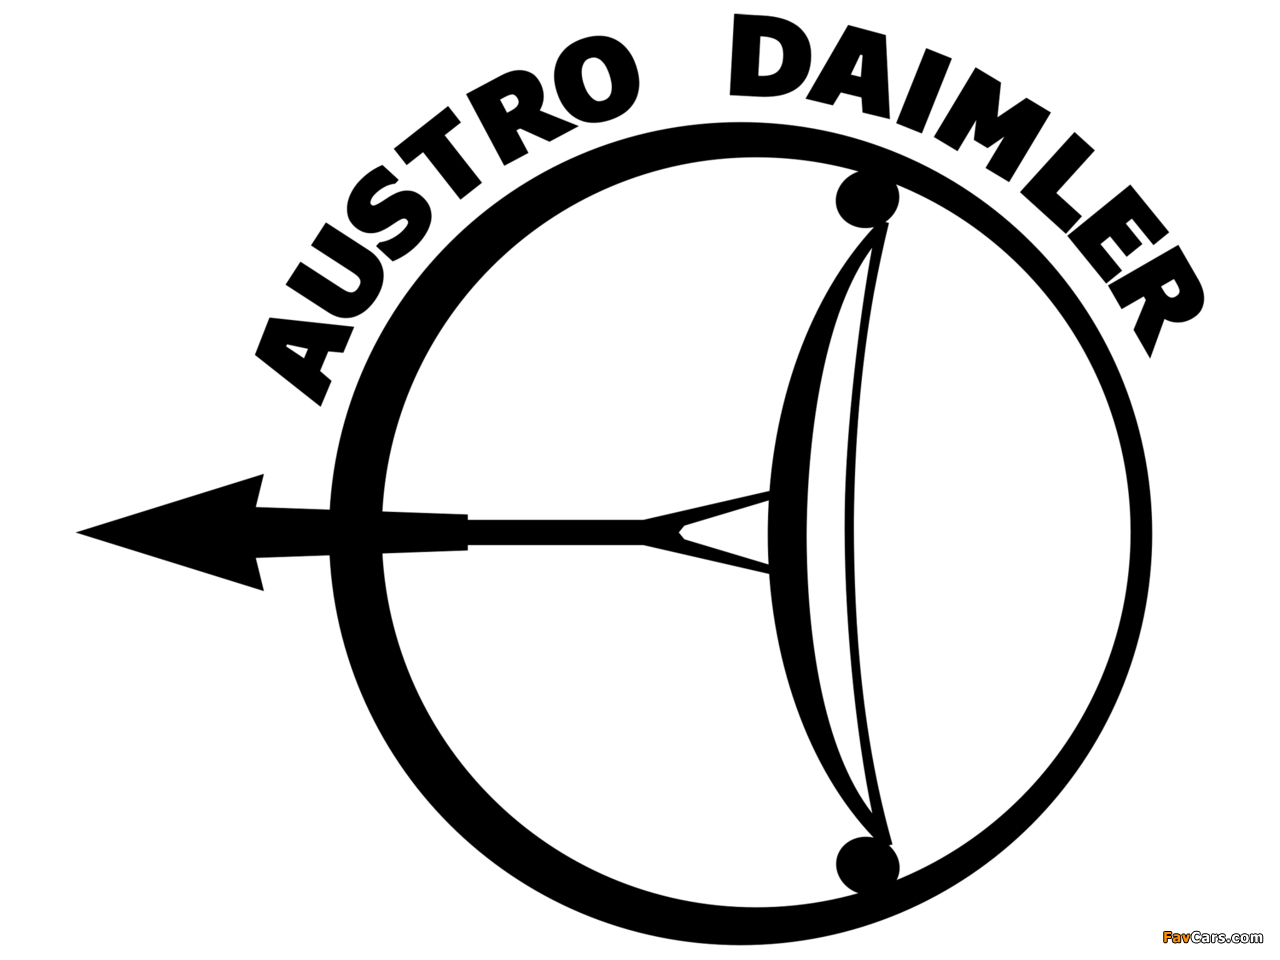 Photos of Austro-Daimler (1280 x 960)